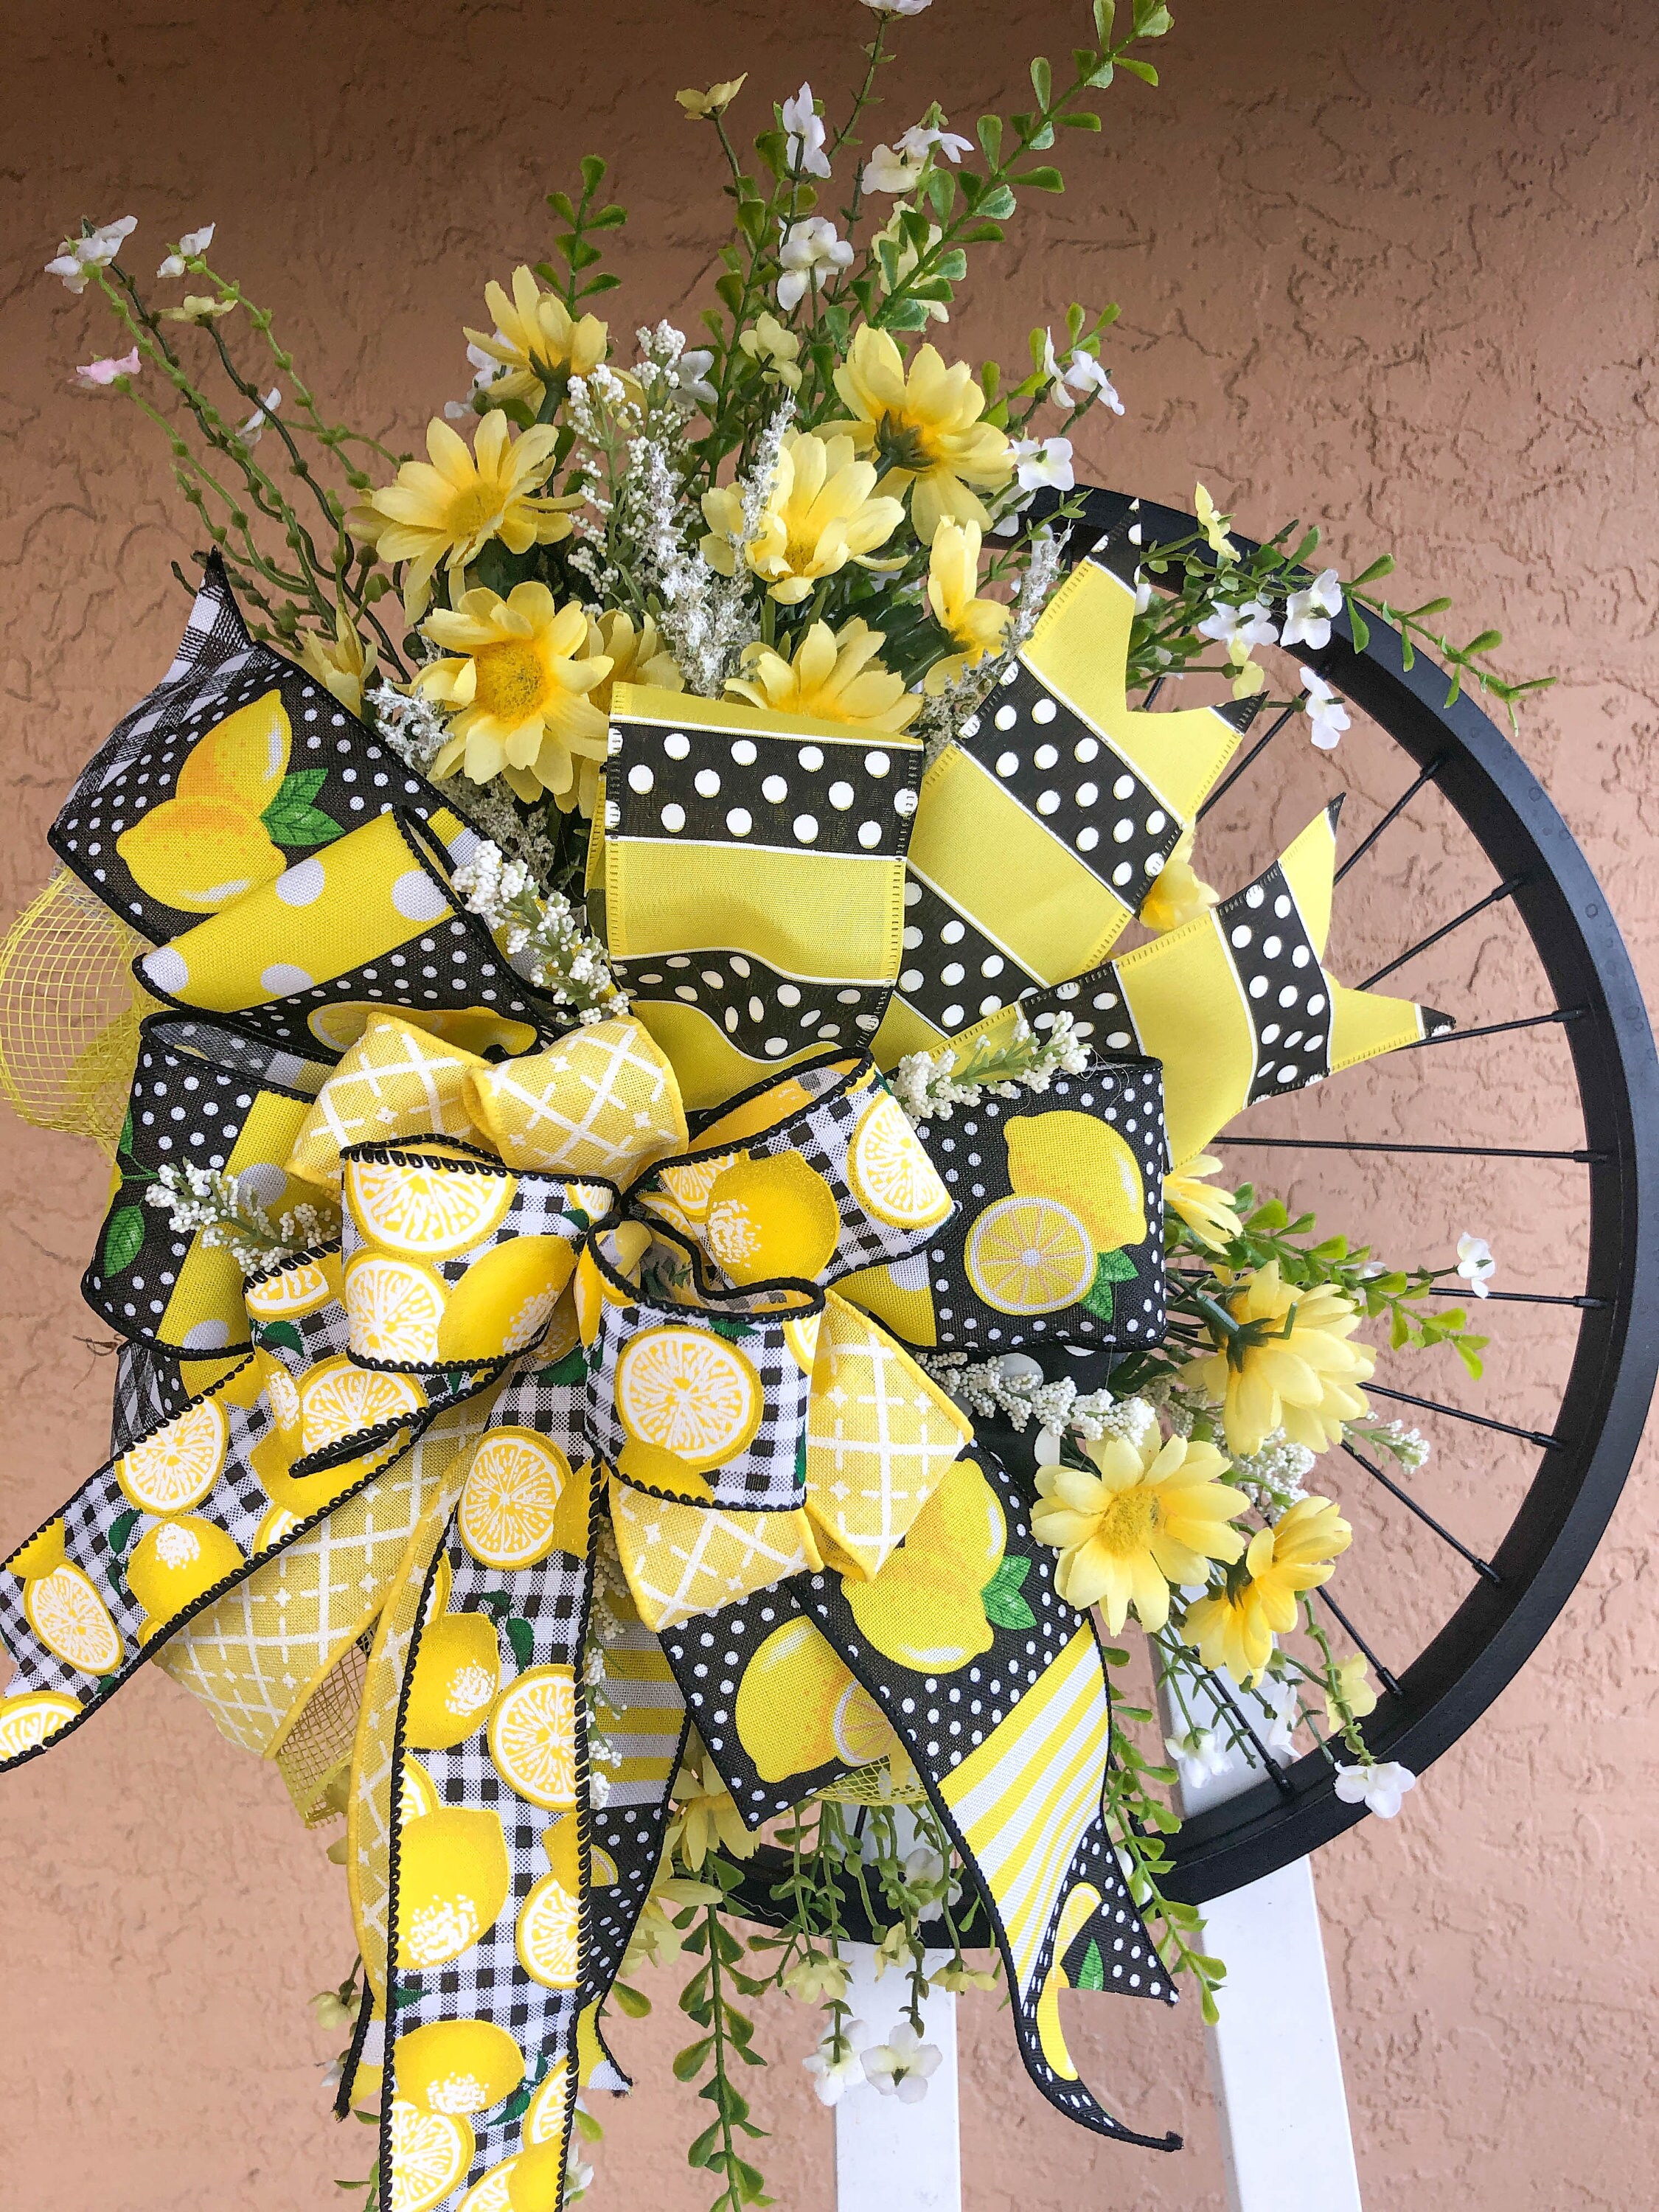 bicyclette citron